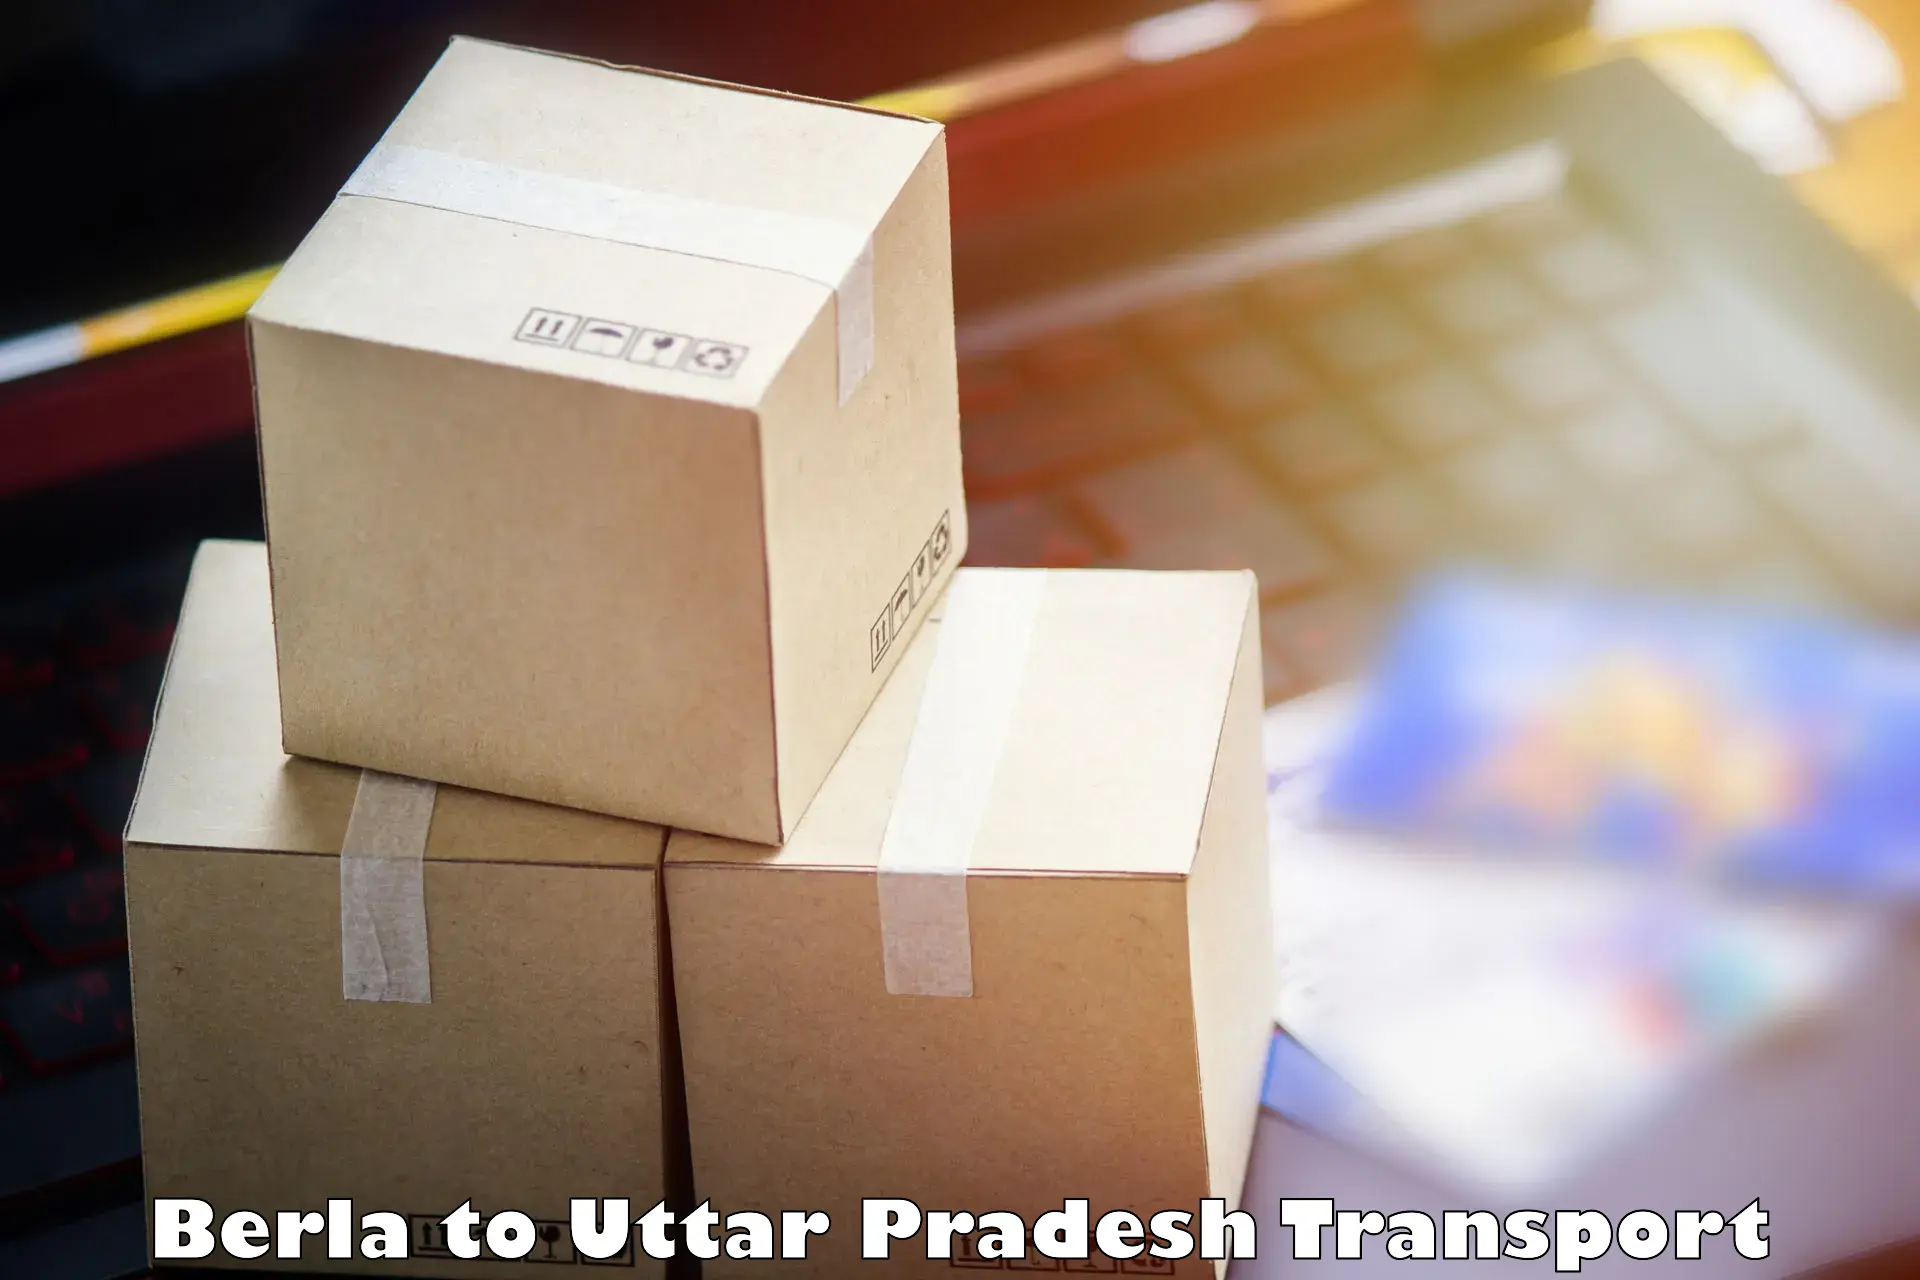 Logistics transportation services Berla to Uttar Pradesh